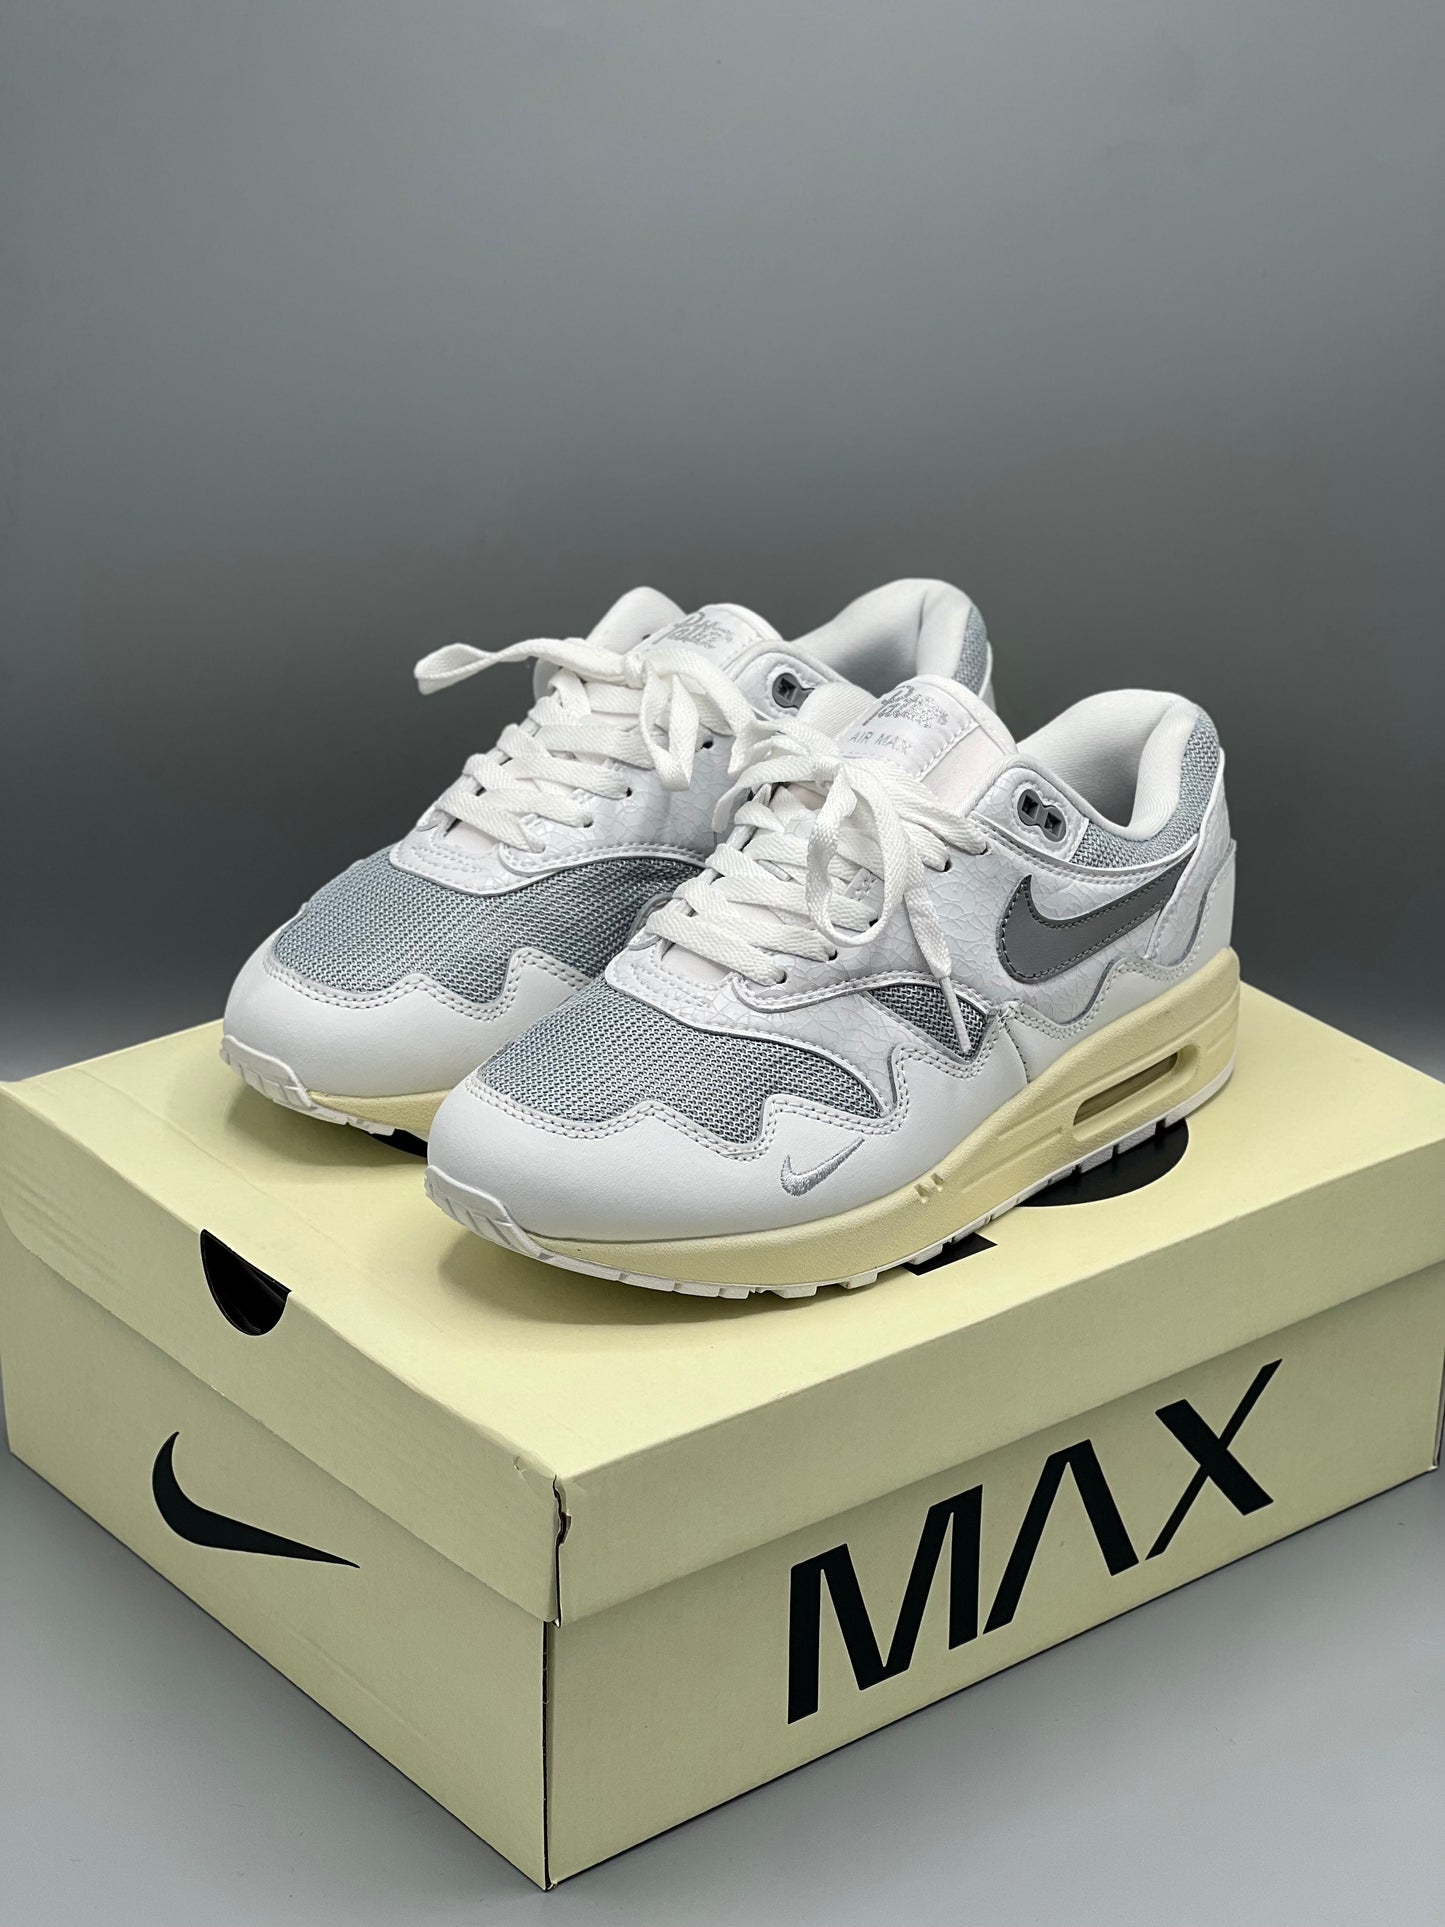 Nike air Max x PATTA